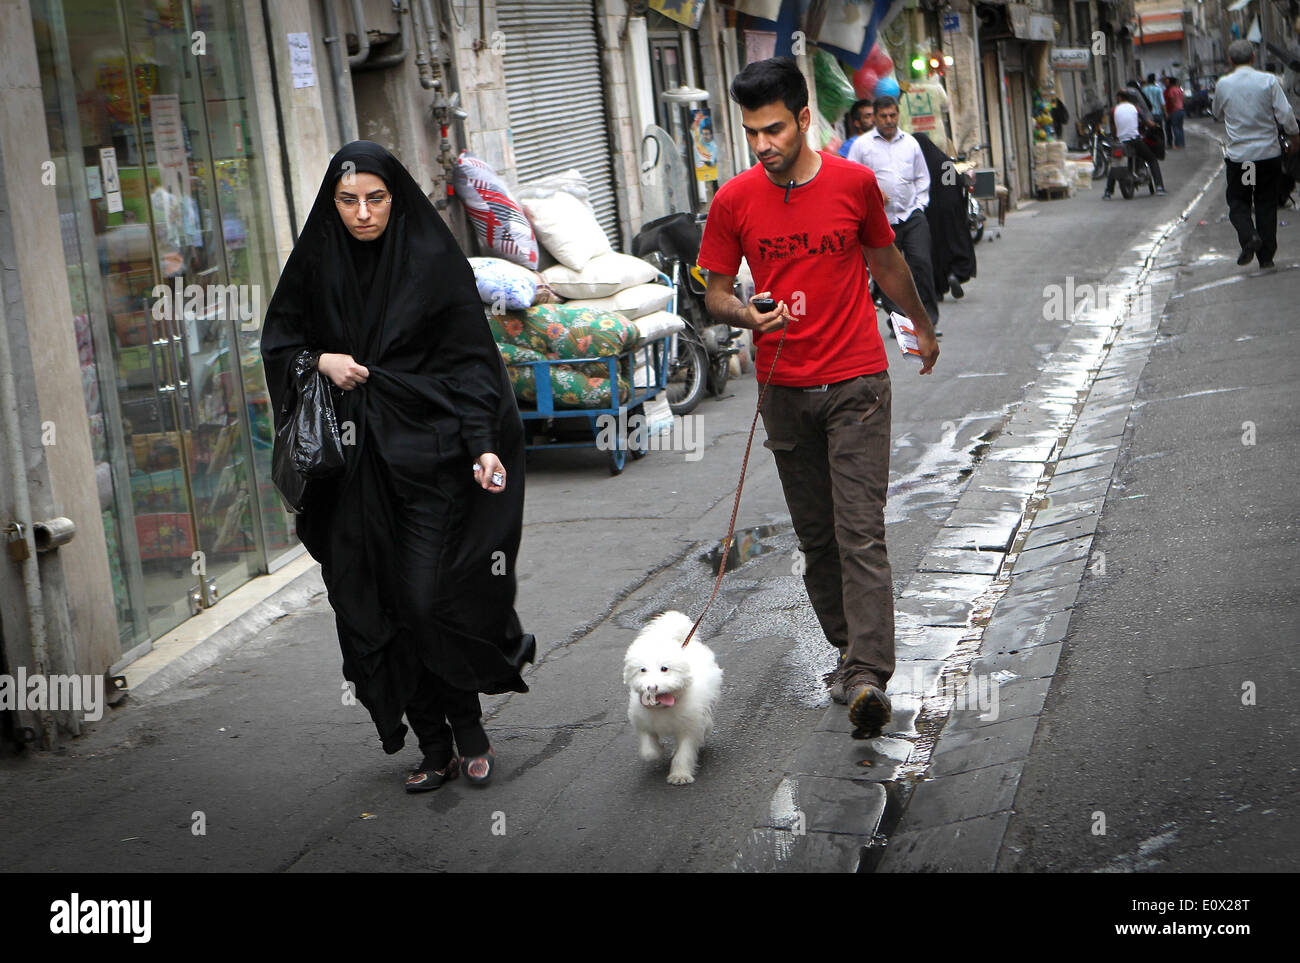 Téhéran, Iran. 19 mai, 2014. Une femme en tchador marche sur une rue de Téhéran, capitale de l'Iran, le 19 mai 2014. Tchador est un genre de Hijab officiel pour de nombreuses femmes en Iran dans les lieux publics. Le Hijab, une couverture des cheveux et le corps pour les femmes, a été tenu en public après la révolution islamique en Iran en 1979. © Ahmad Halabisaz/Xinhua/Alamy Live News Banque D'Images